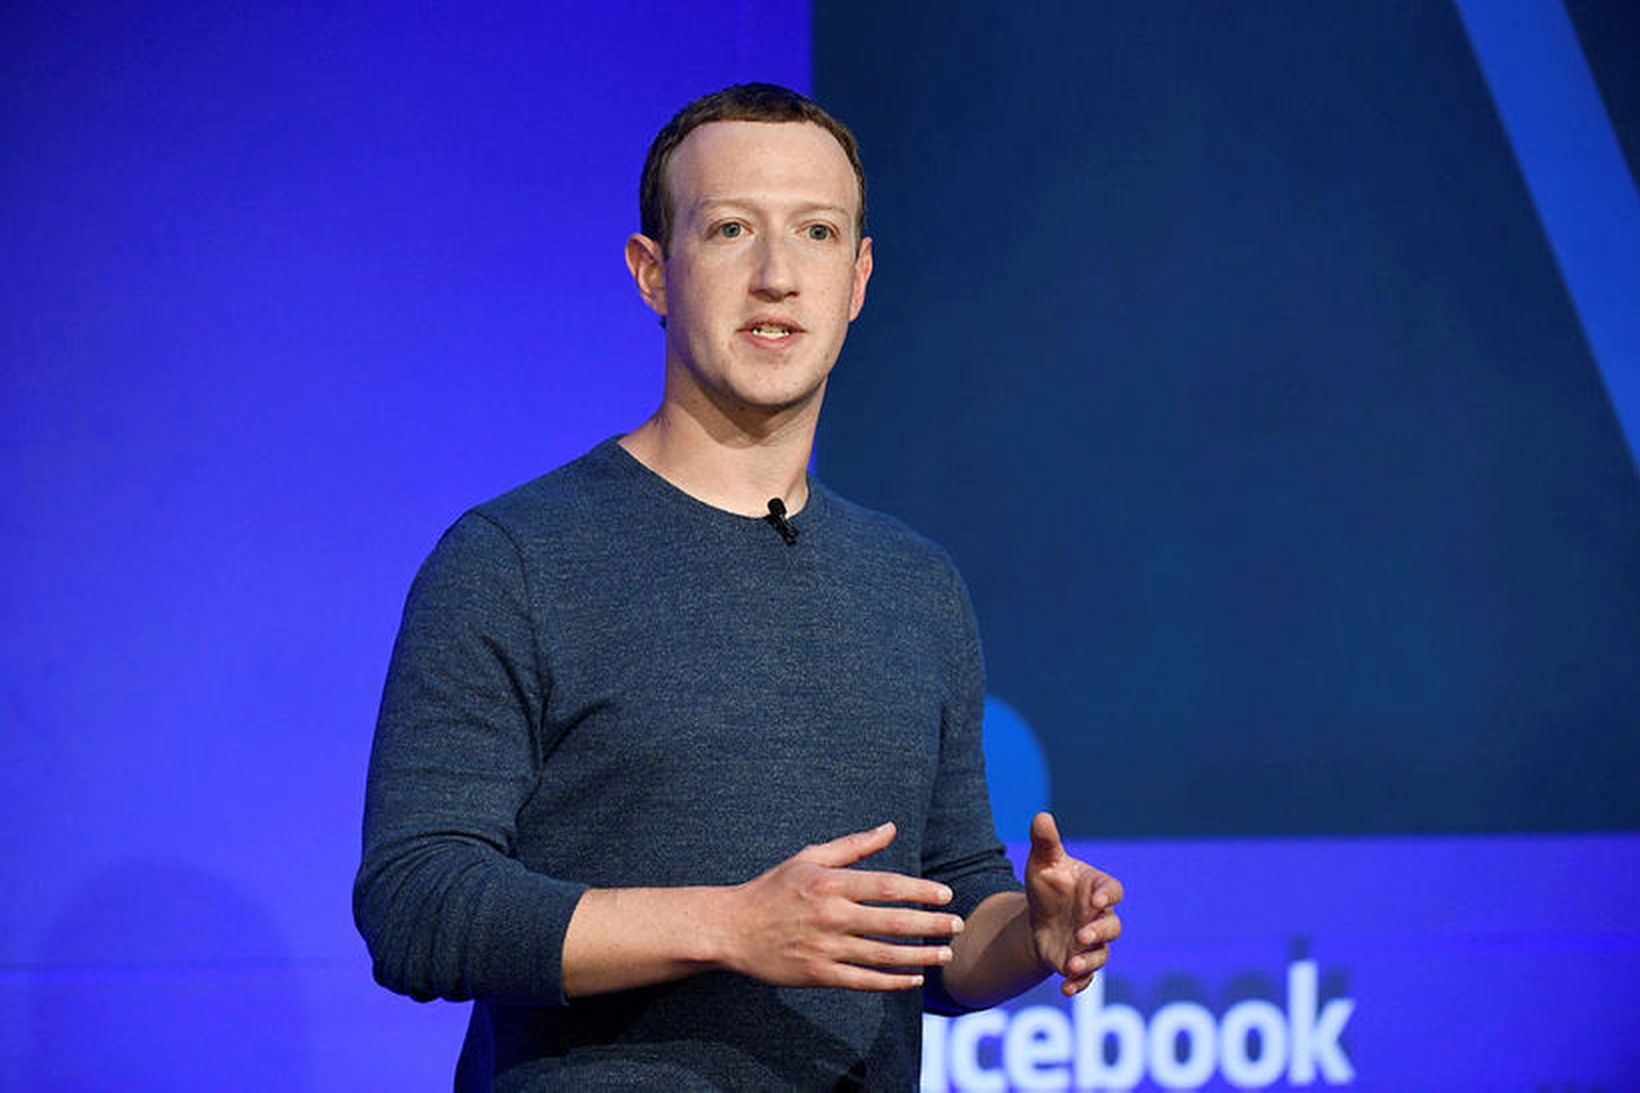 Zuckerberg segir að Facebook muni herða á stefnu sinni